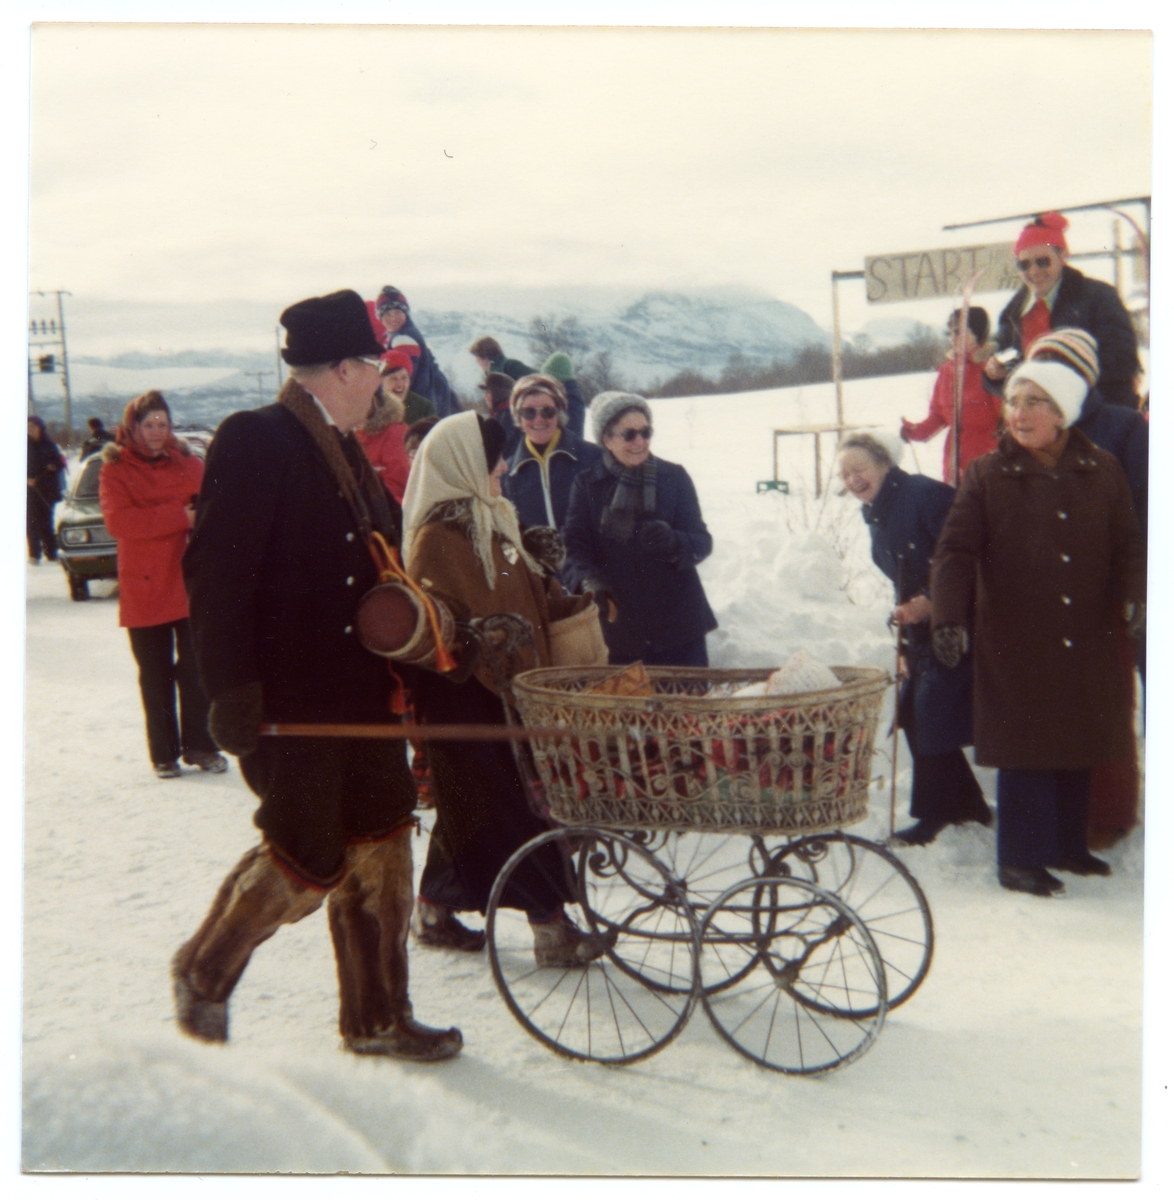 Frå venstre: Knut Lerhol senior med barnevogna, Anne Hillestad(med lyst skaut), Åste Hemsing, ukjent, Olga Sparstad og Ella Stølen